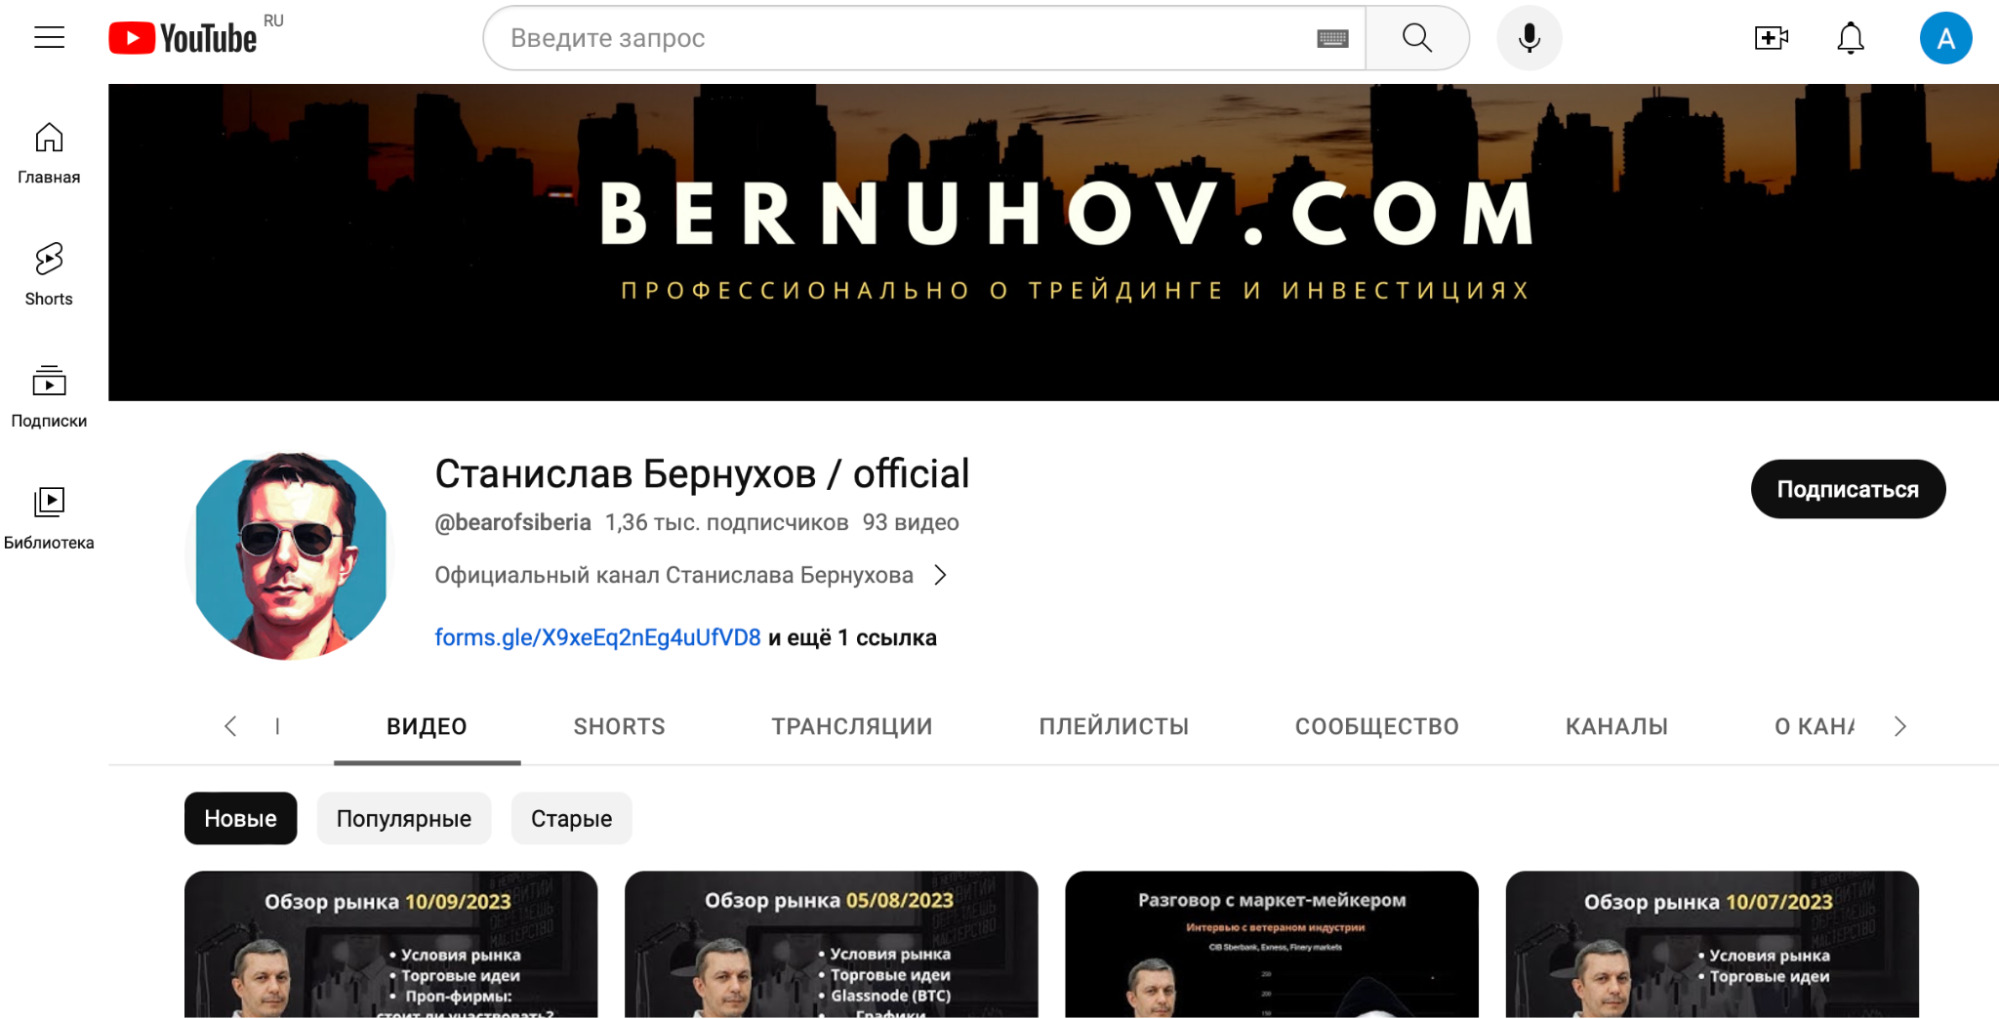 Станислав Бернухов - официальный канал на ютуб